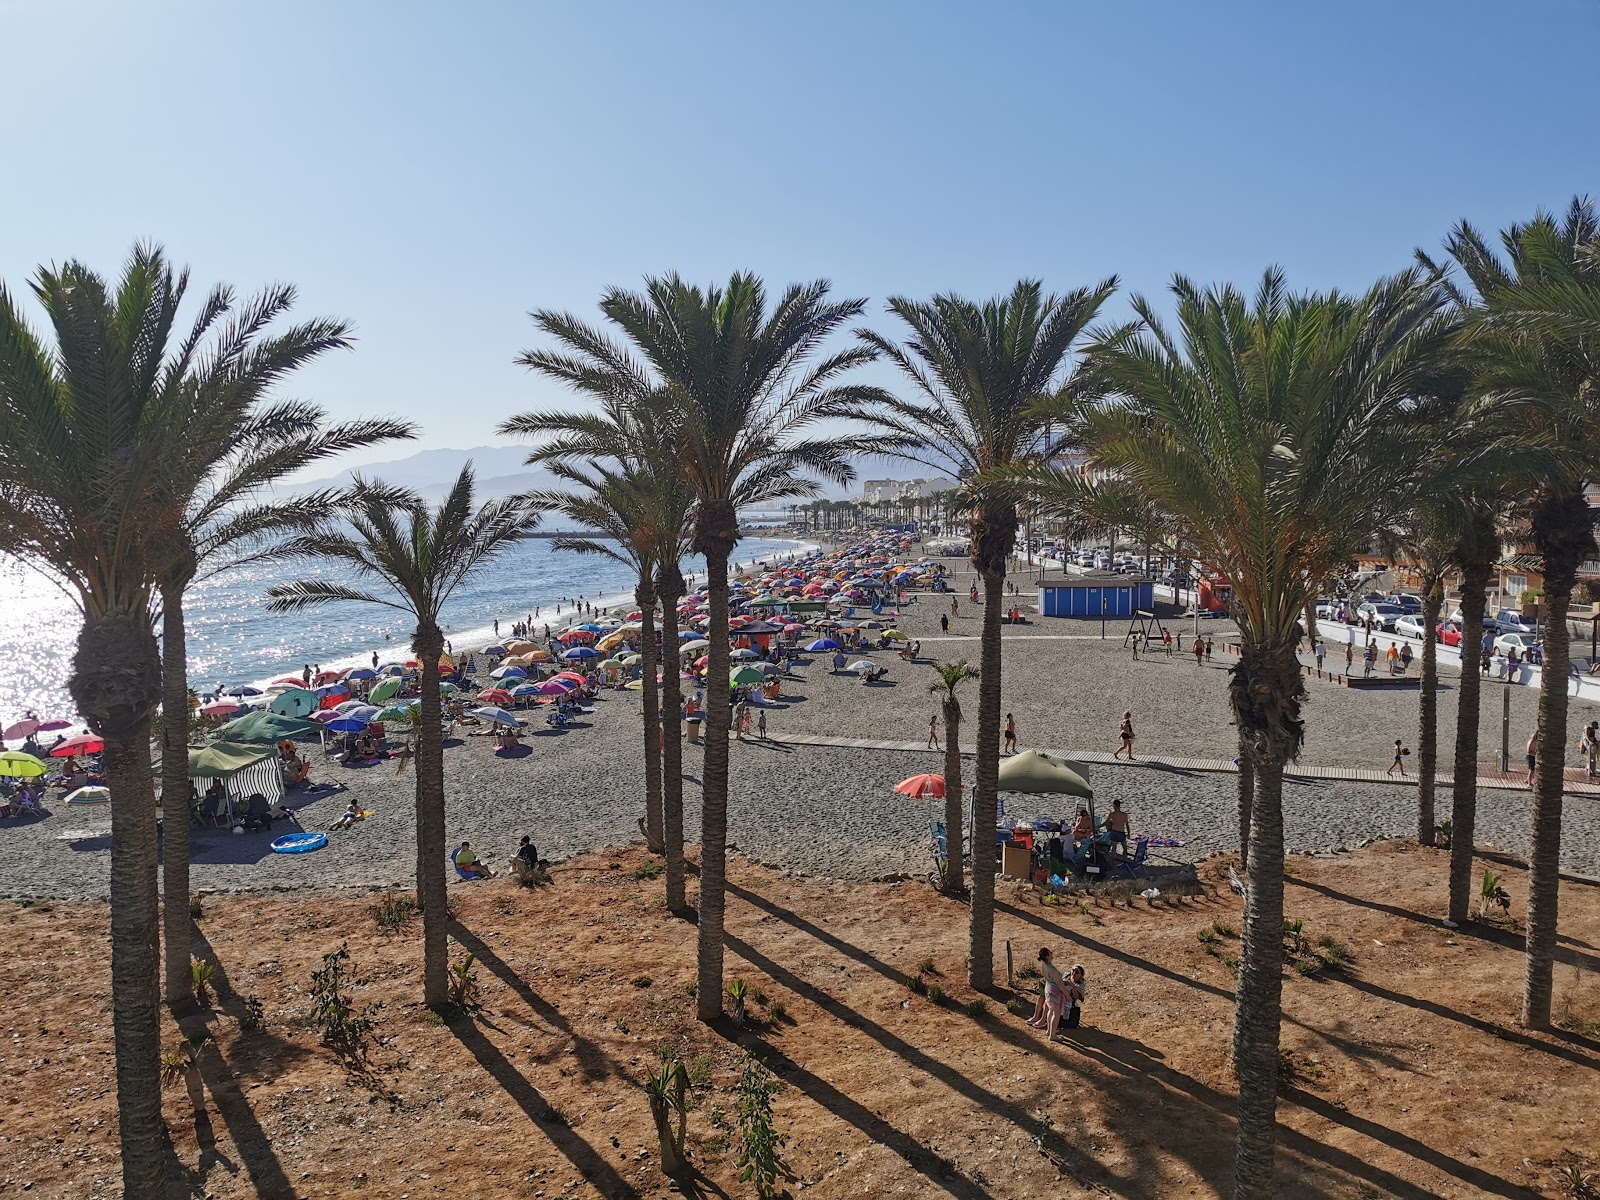 Foto af Playa de Torrenueva Costa - populært sted blandt afslapningskendere